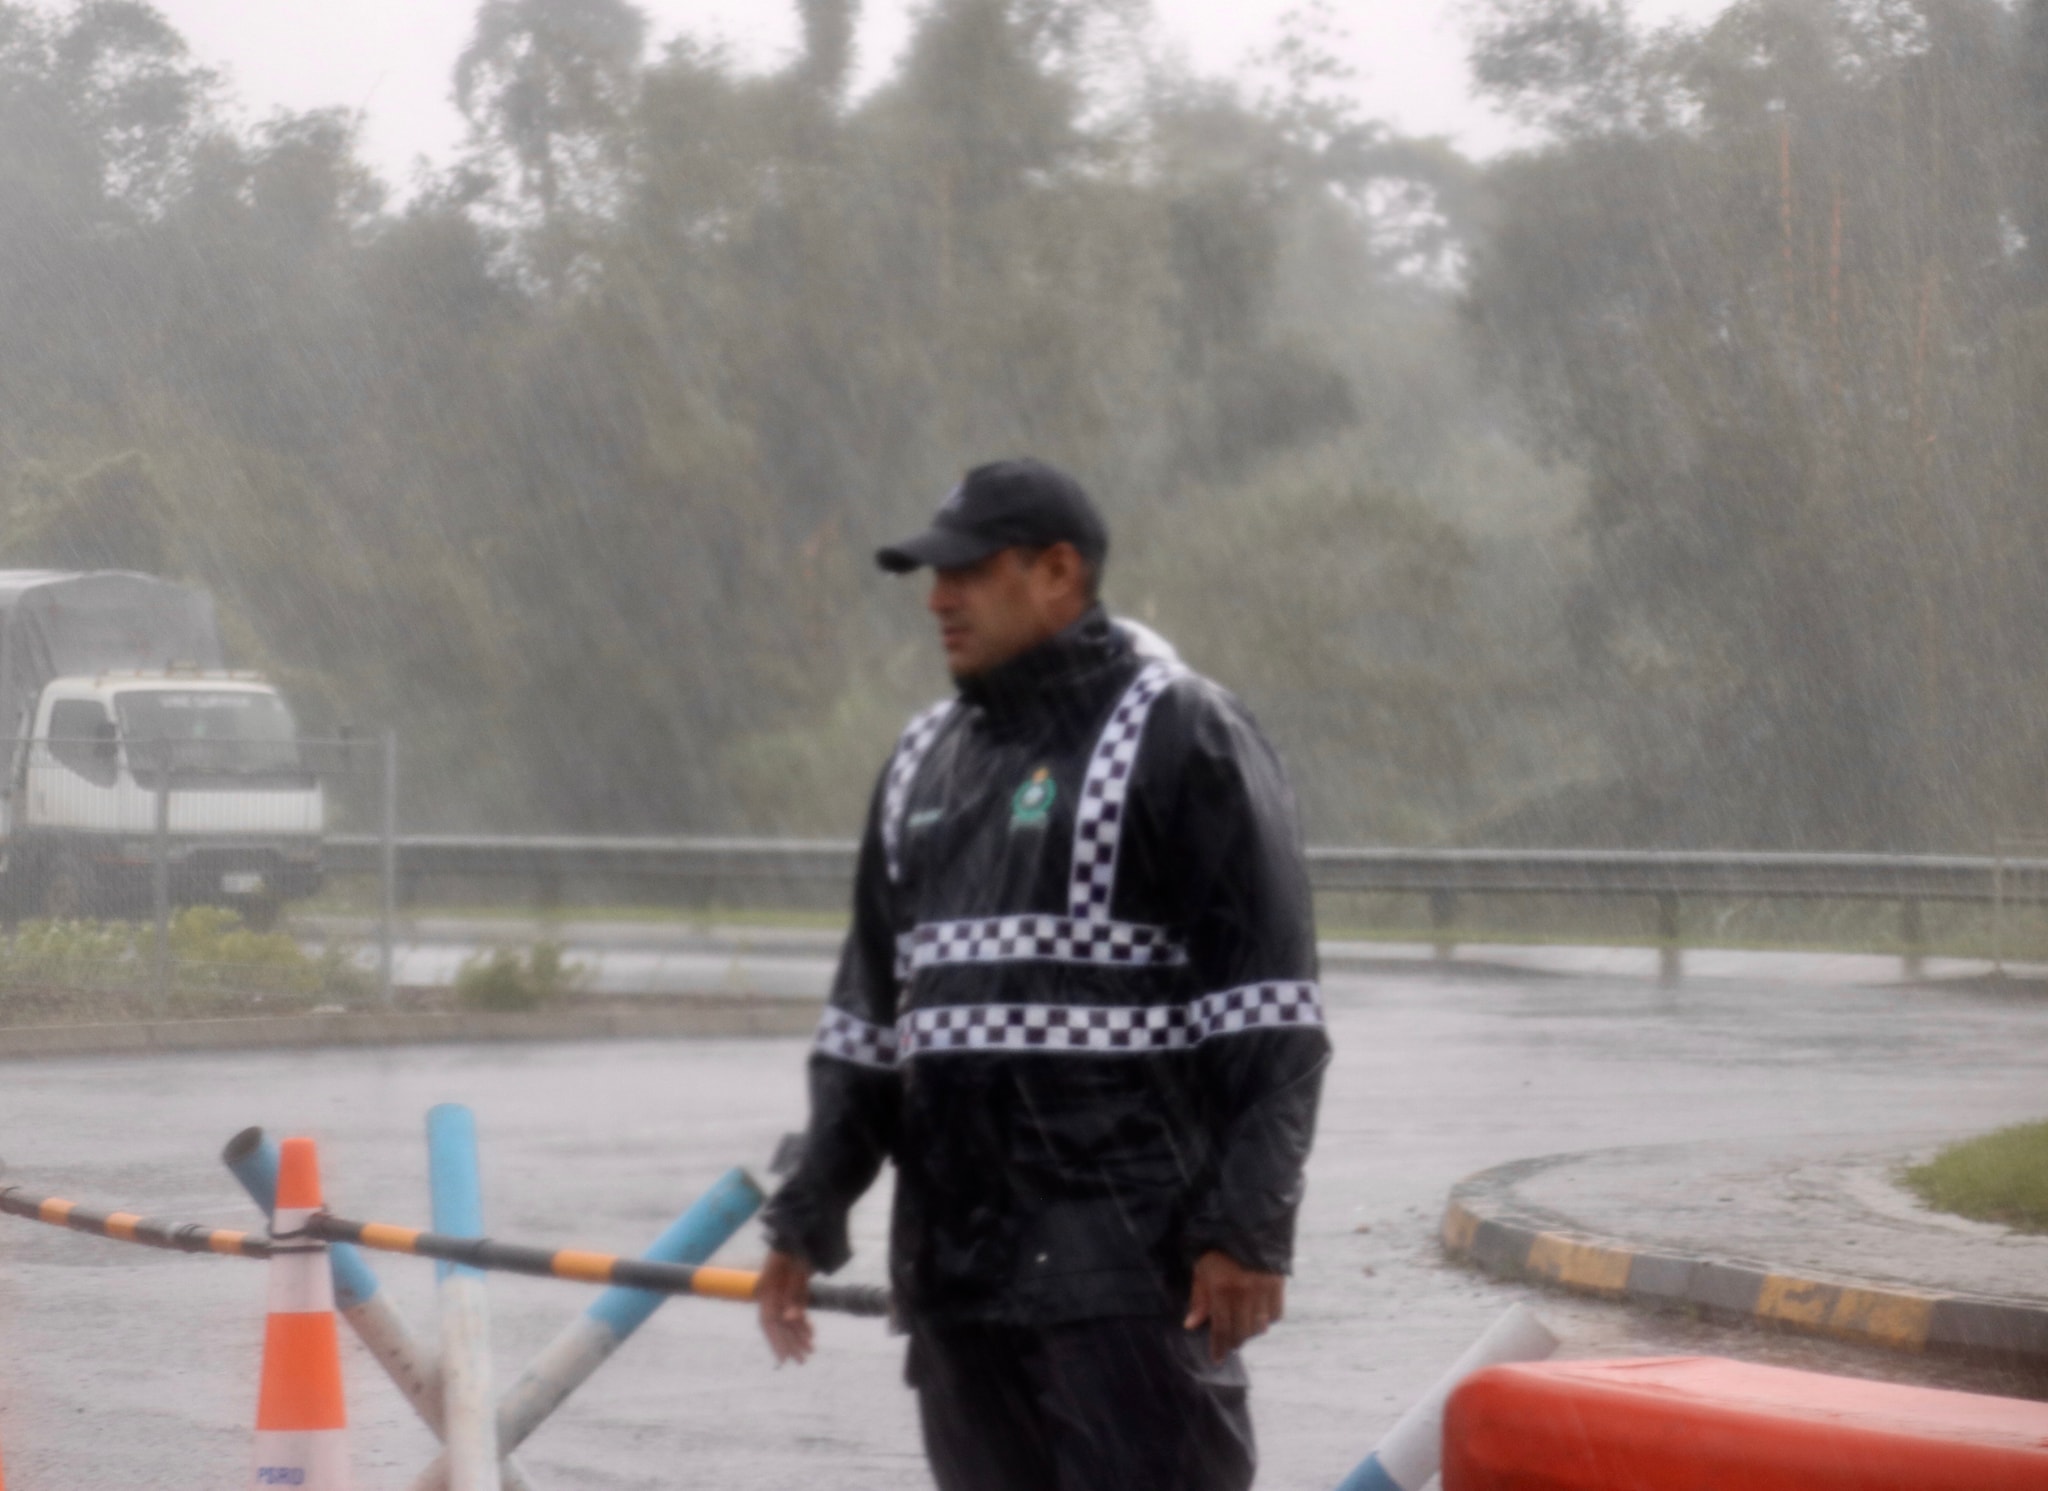 police man in rain